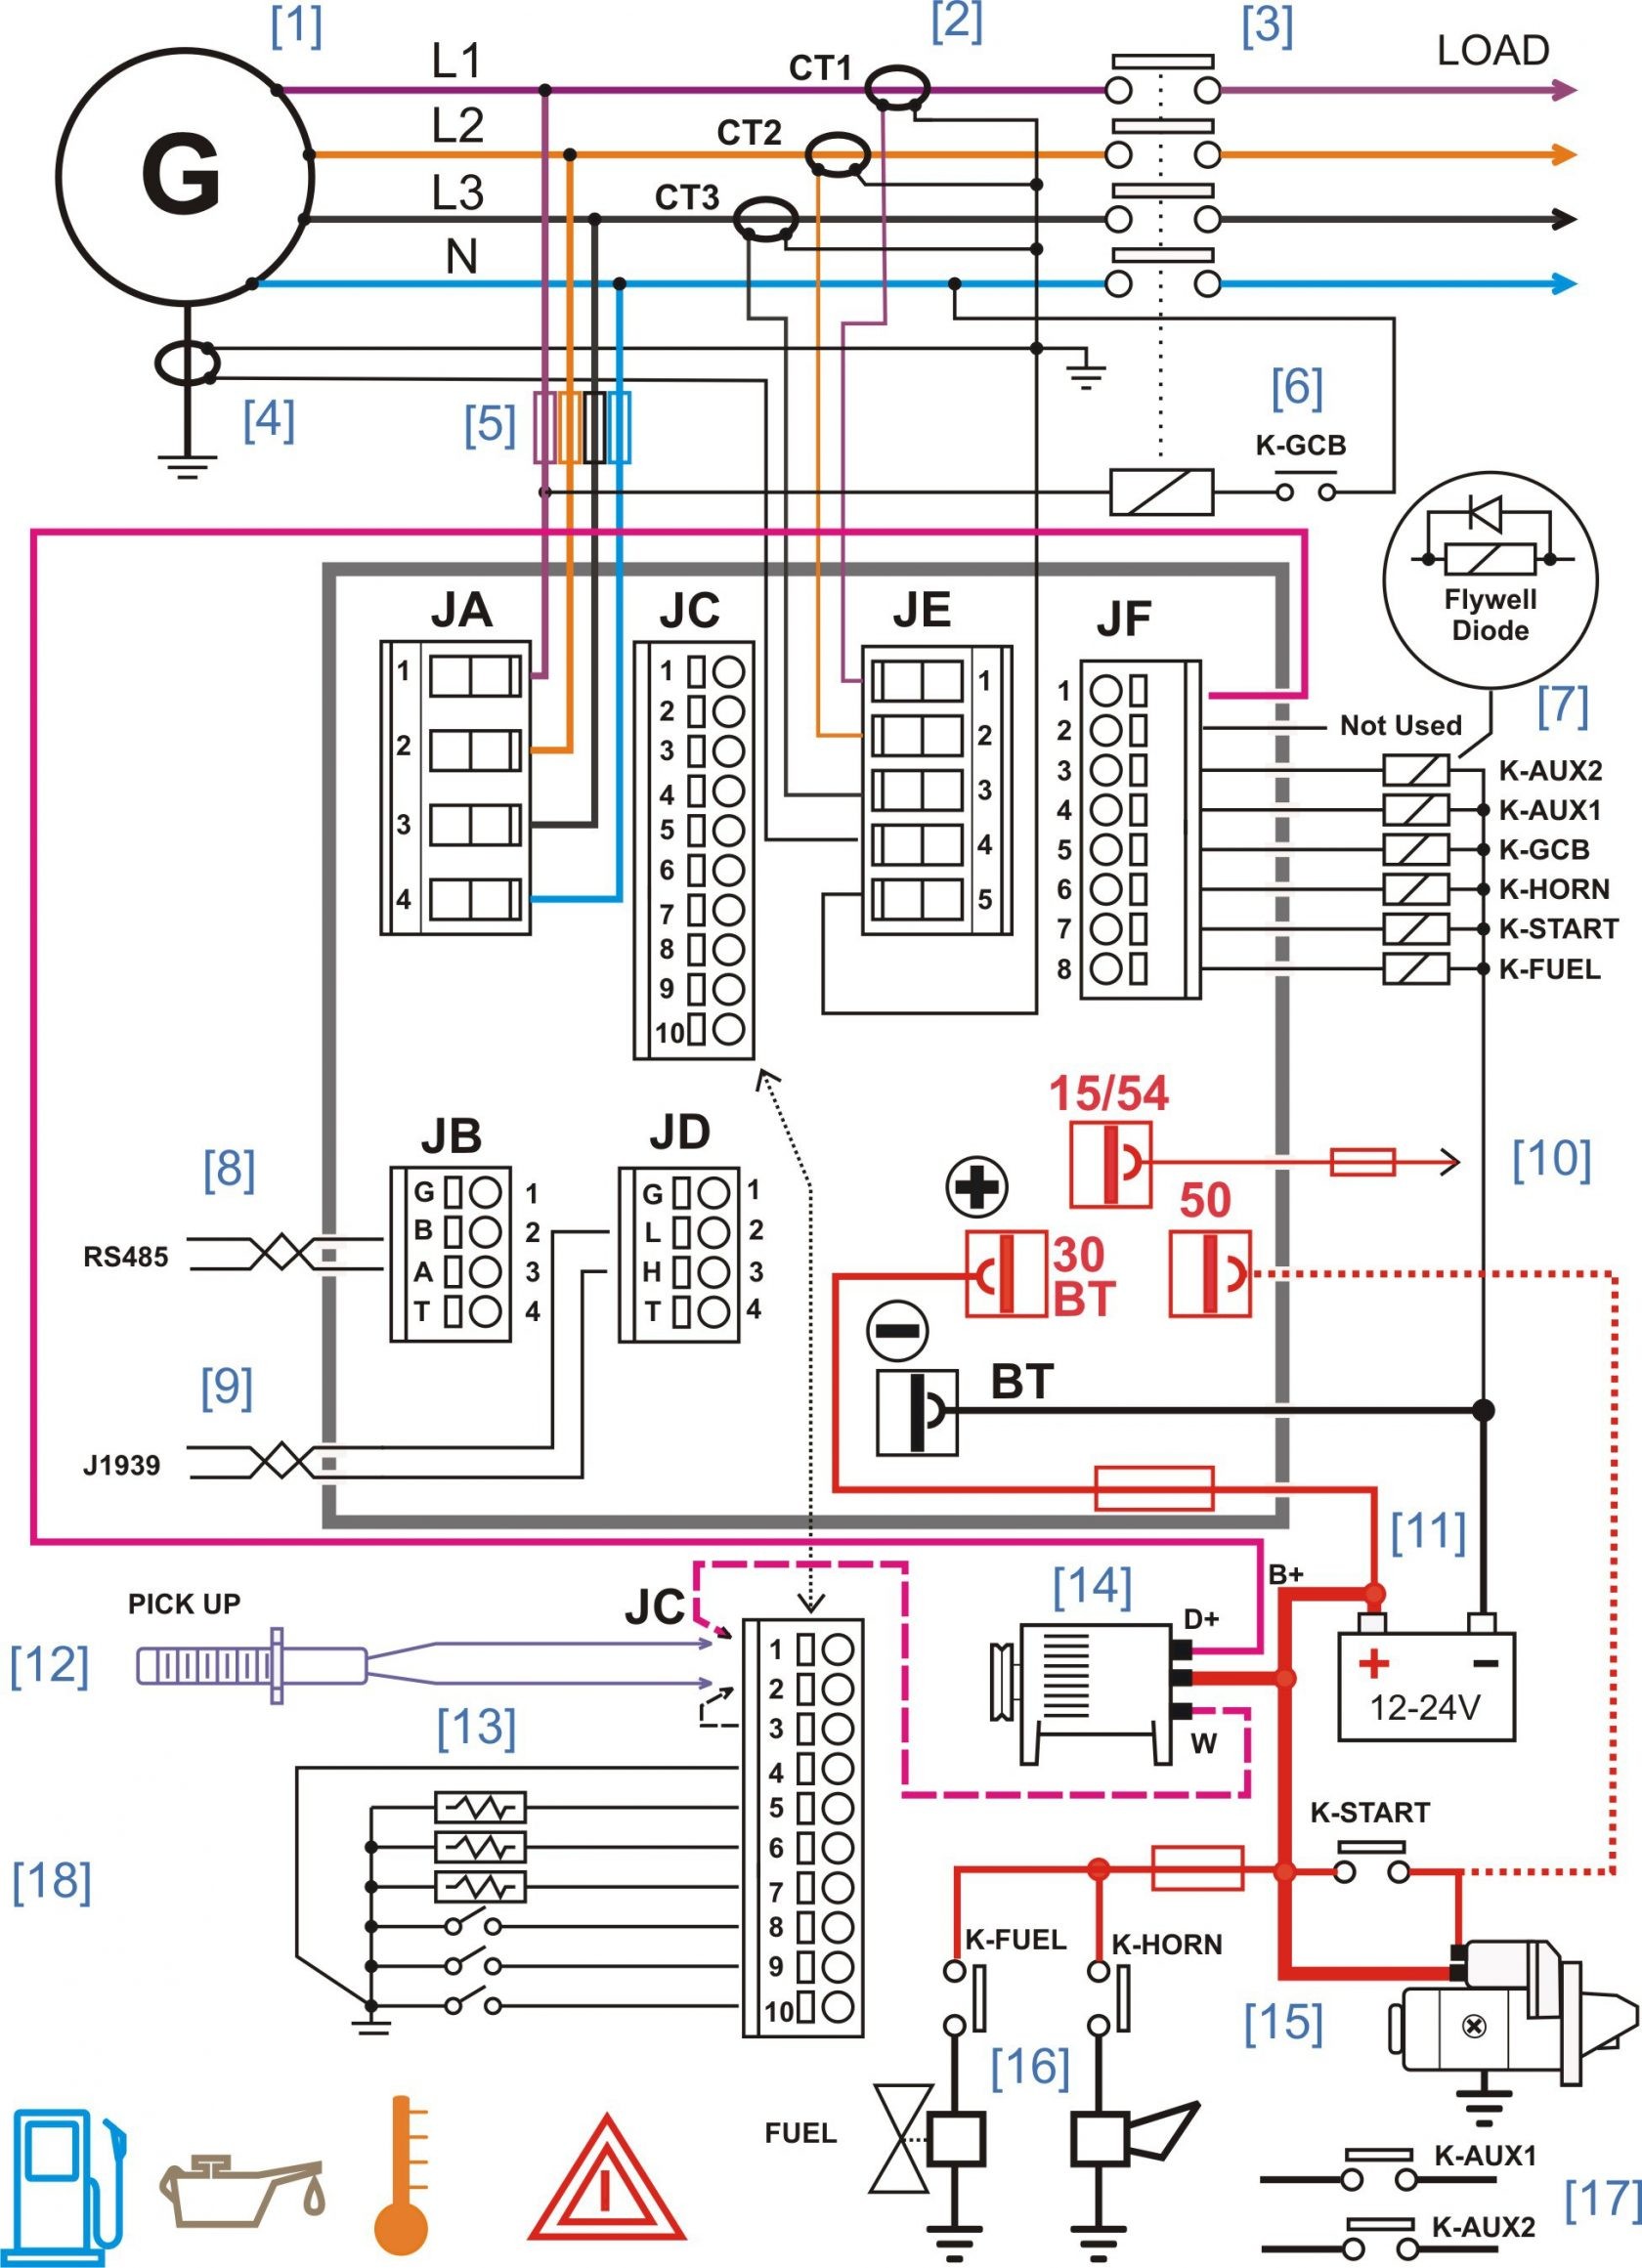 Unique Wiring Diagram Delco Radio Model Delphi Radio Wiring Diagram Best Basic Home Wiring Diagrams